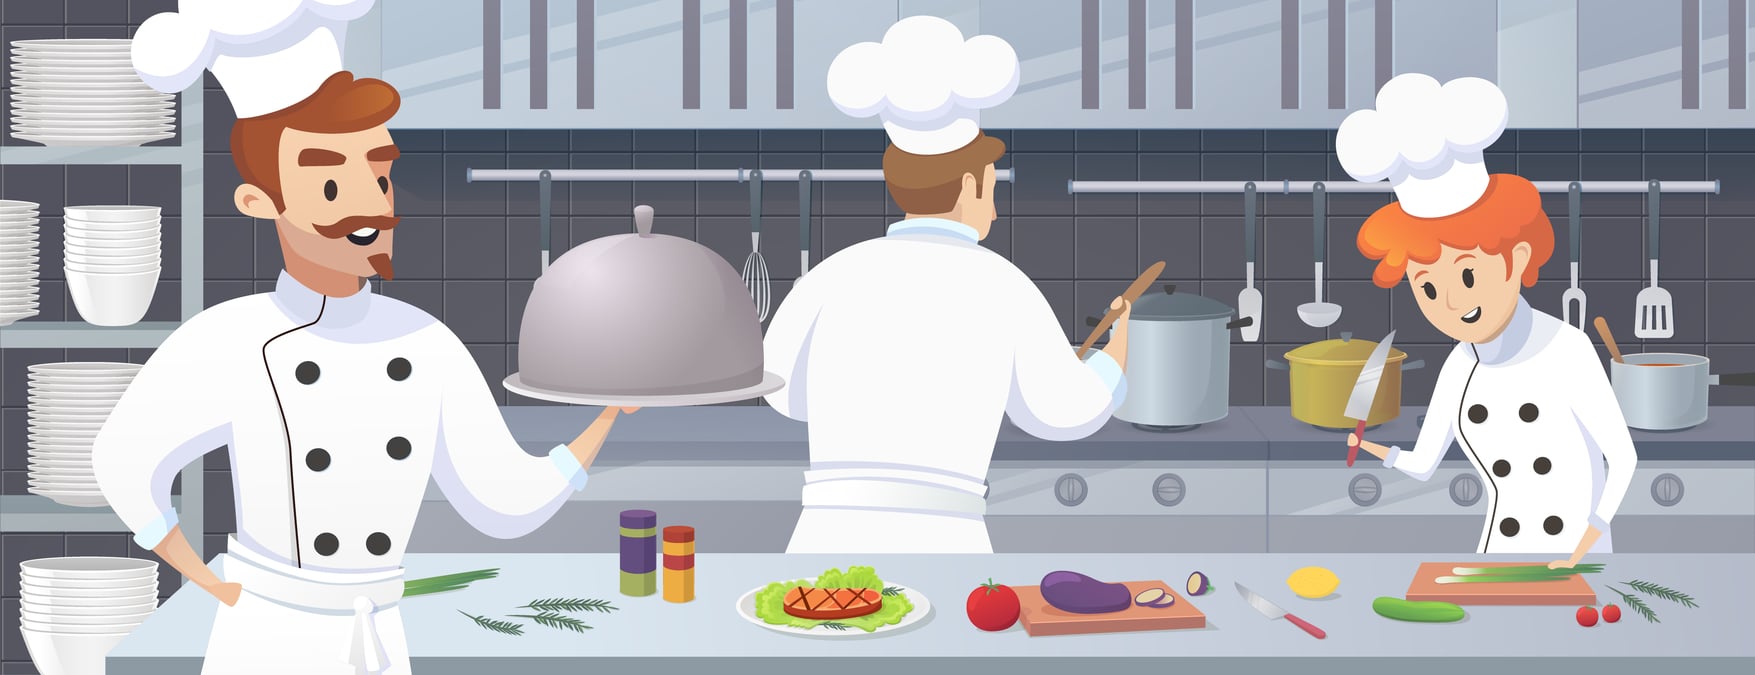 Conhecimentos Necessários para ser um Chefe de Cozinha Profissional